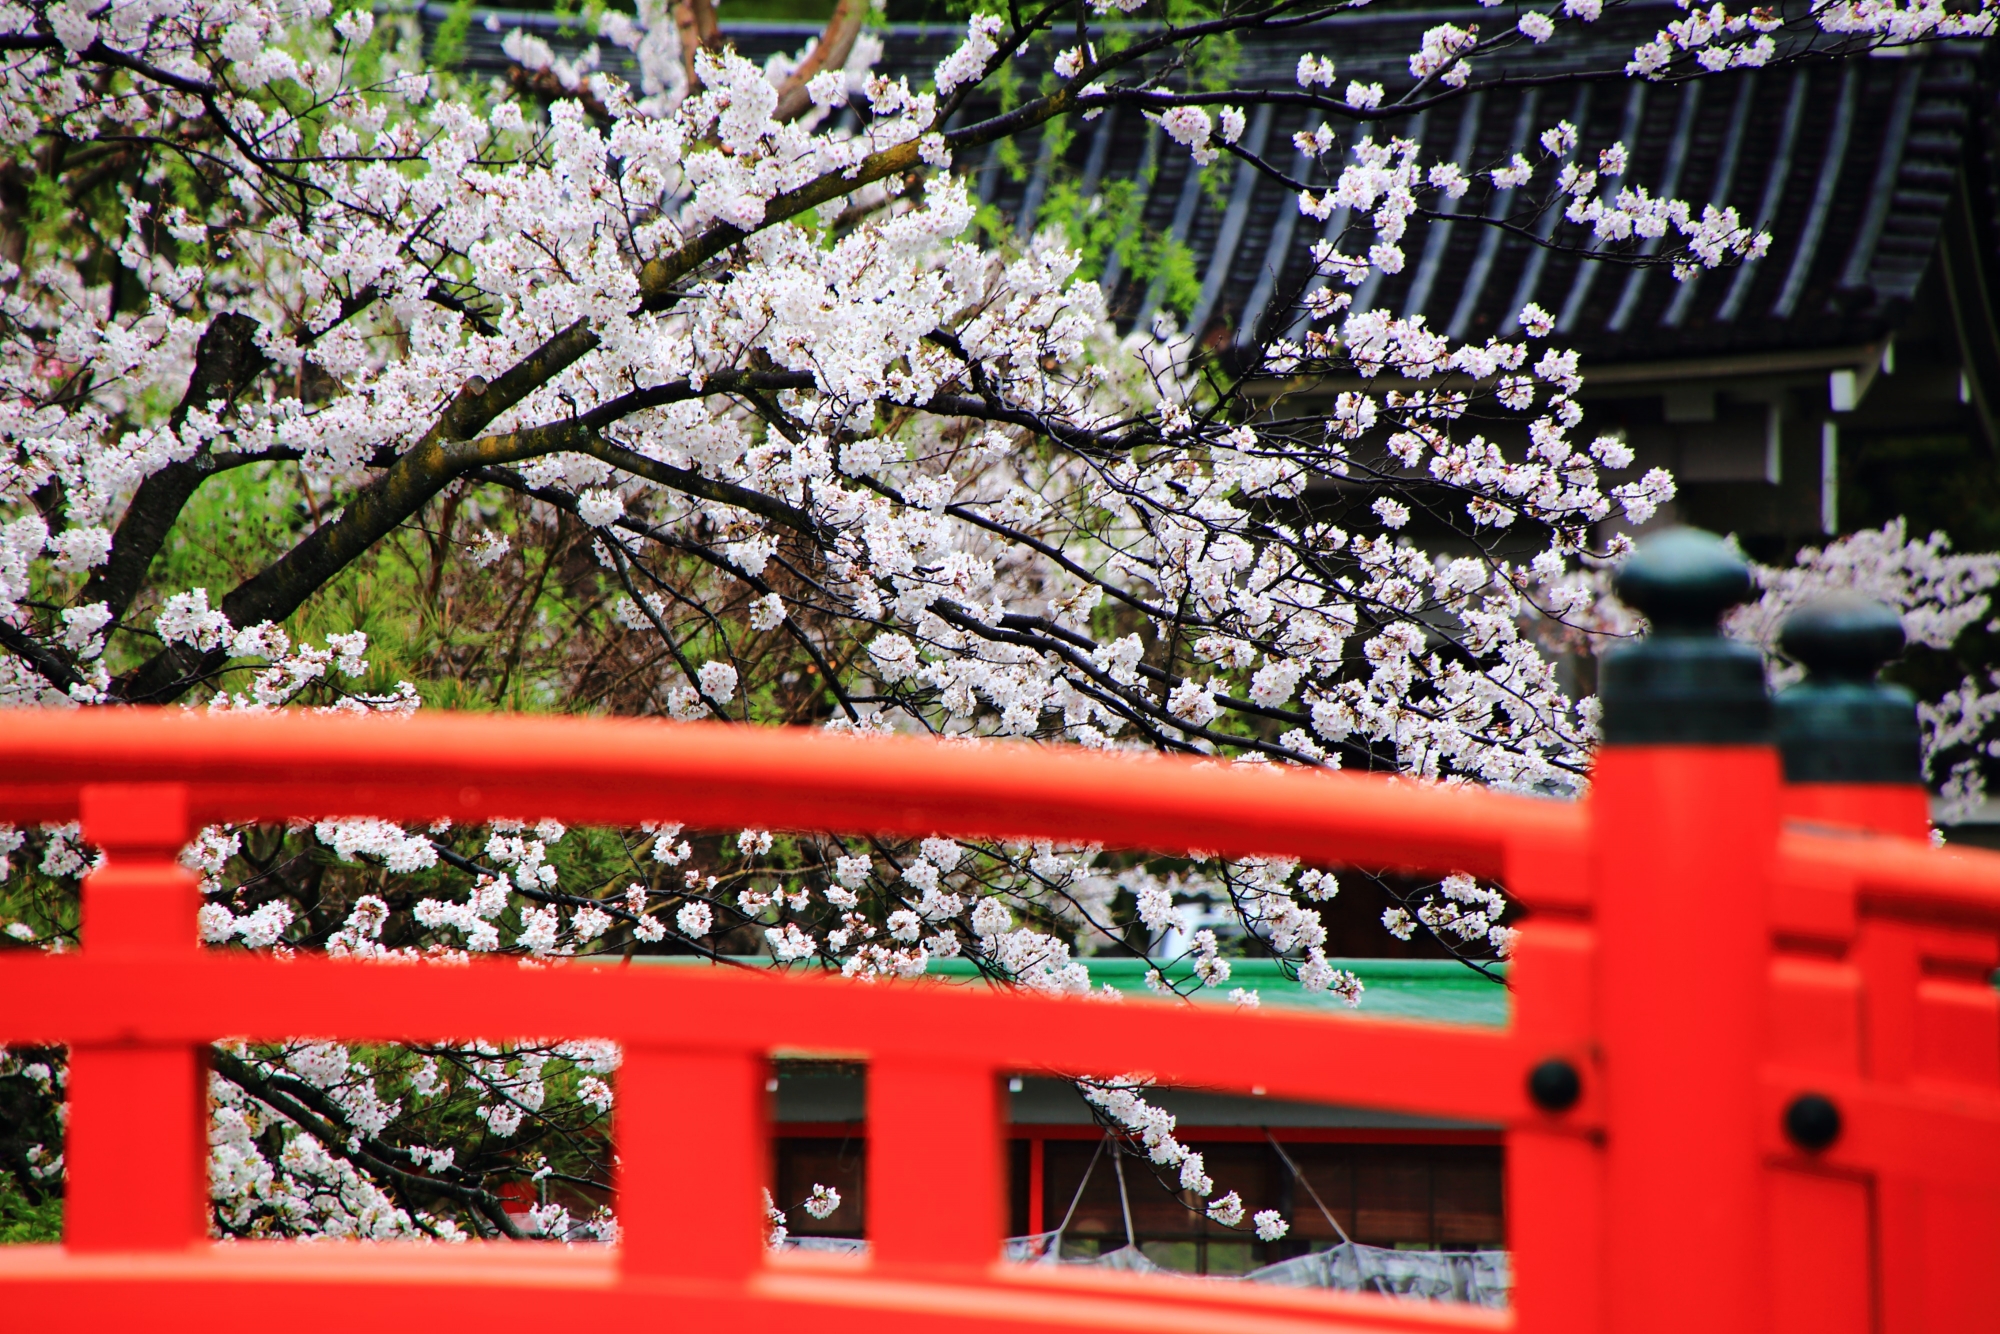 橋の赤い欄干から見える華やかな桜